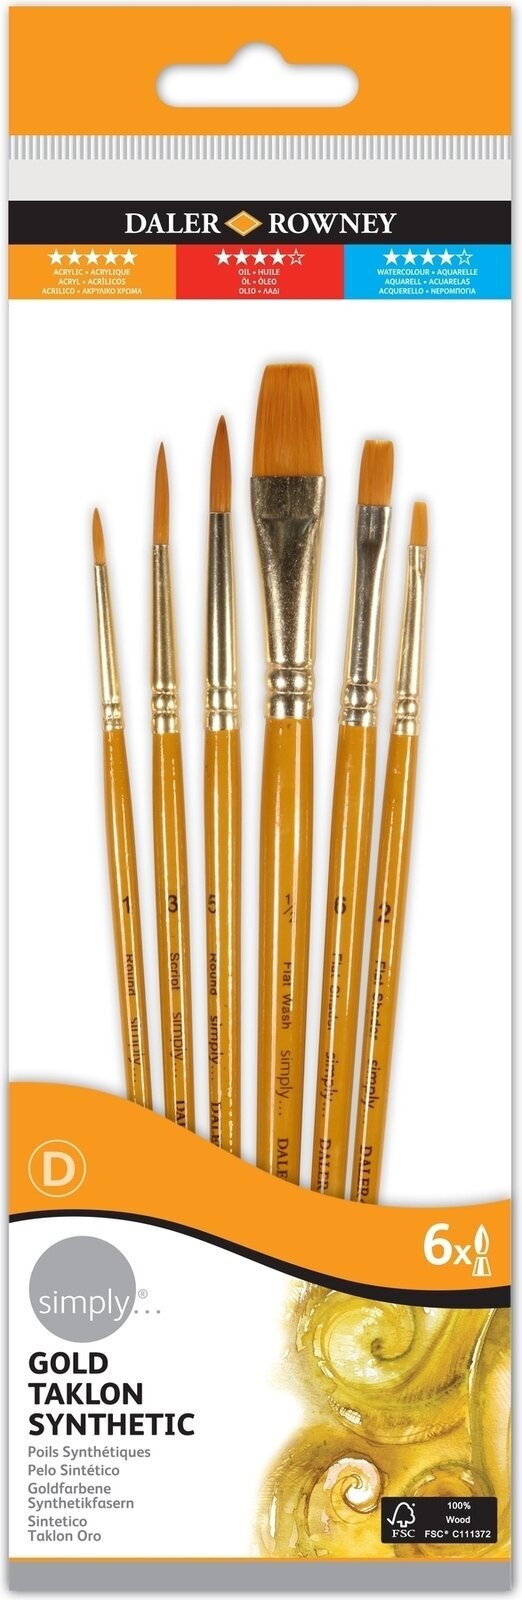 Pensel Daler Rowney Simply Acrylic Brush Gold Taklon Synthetic Penselsæt 1 stk.